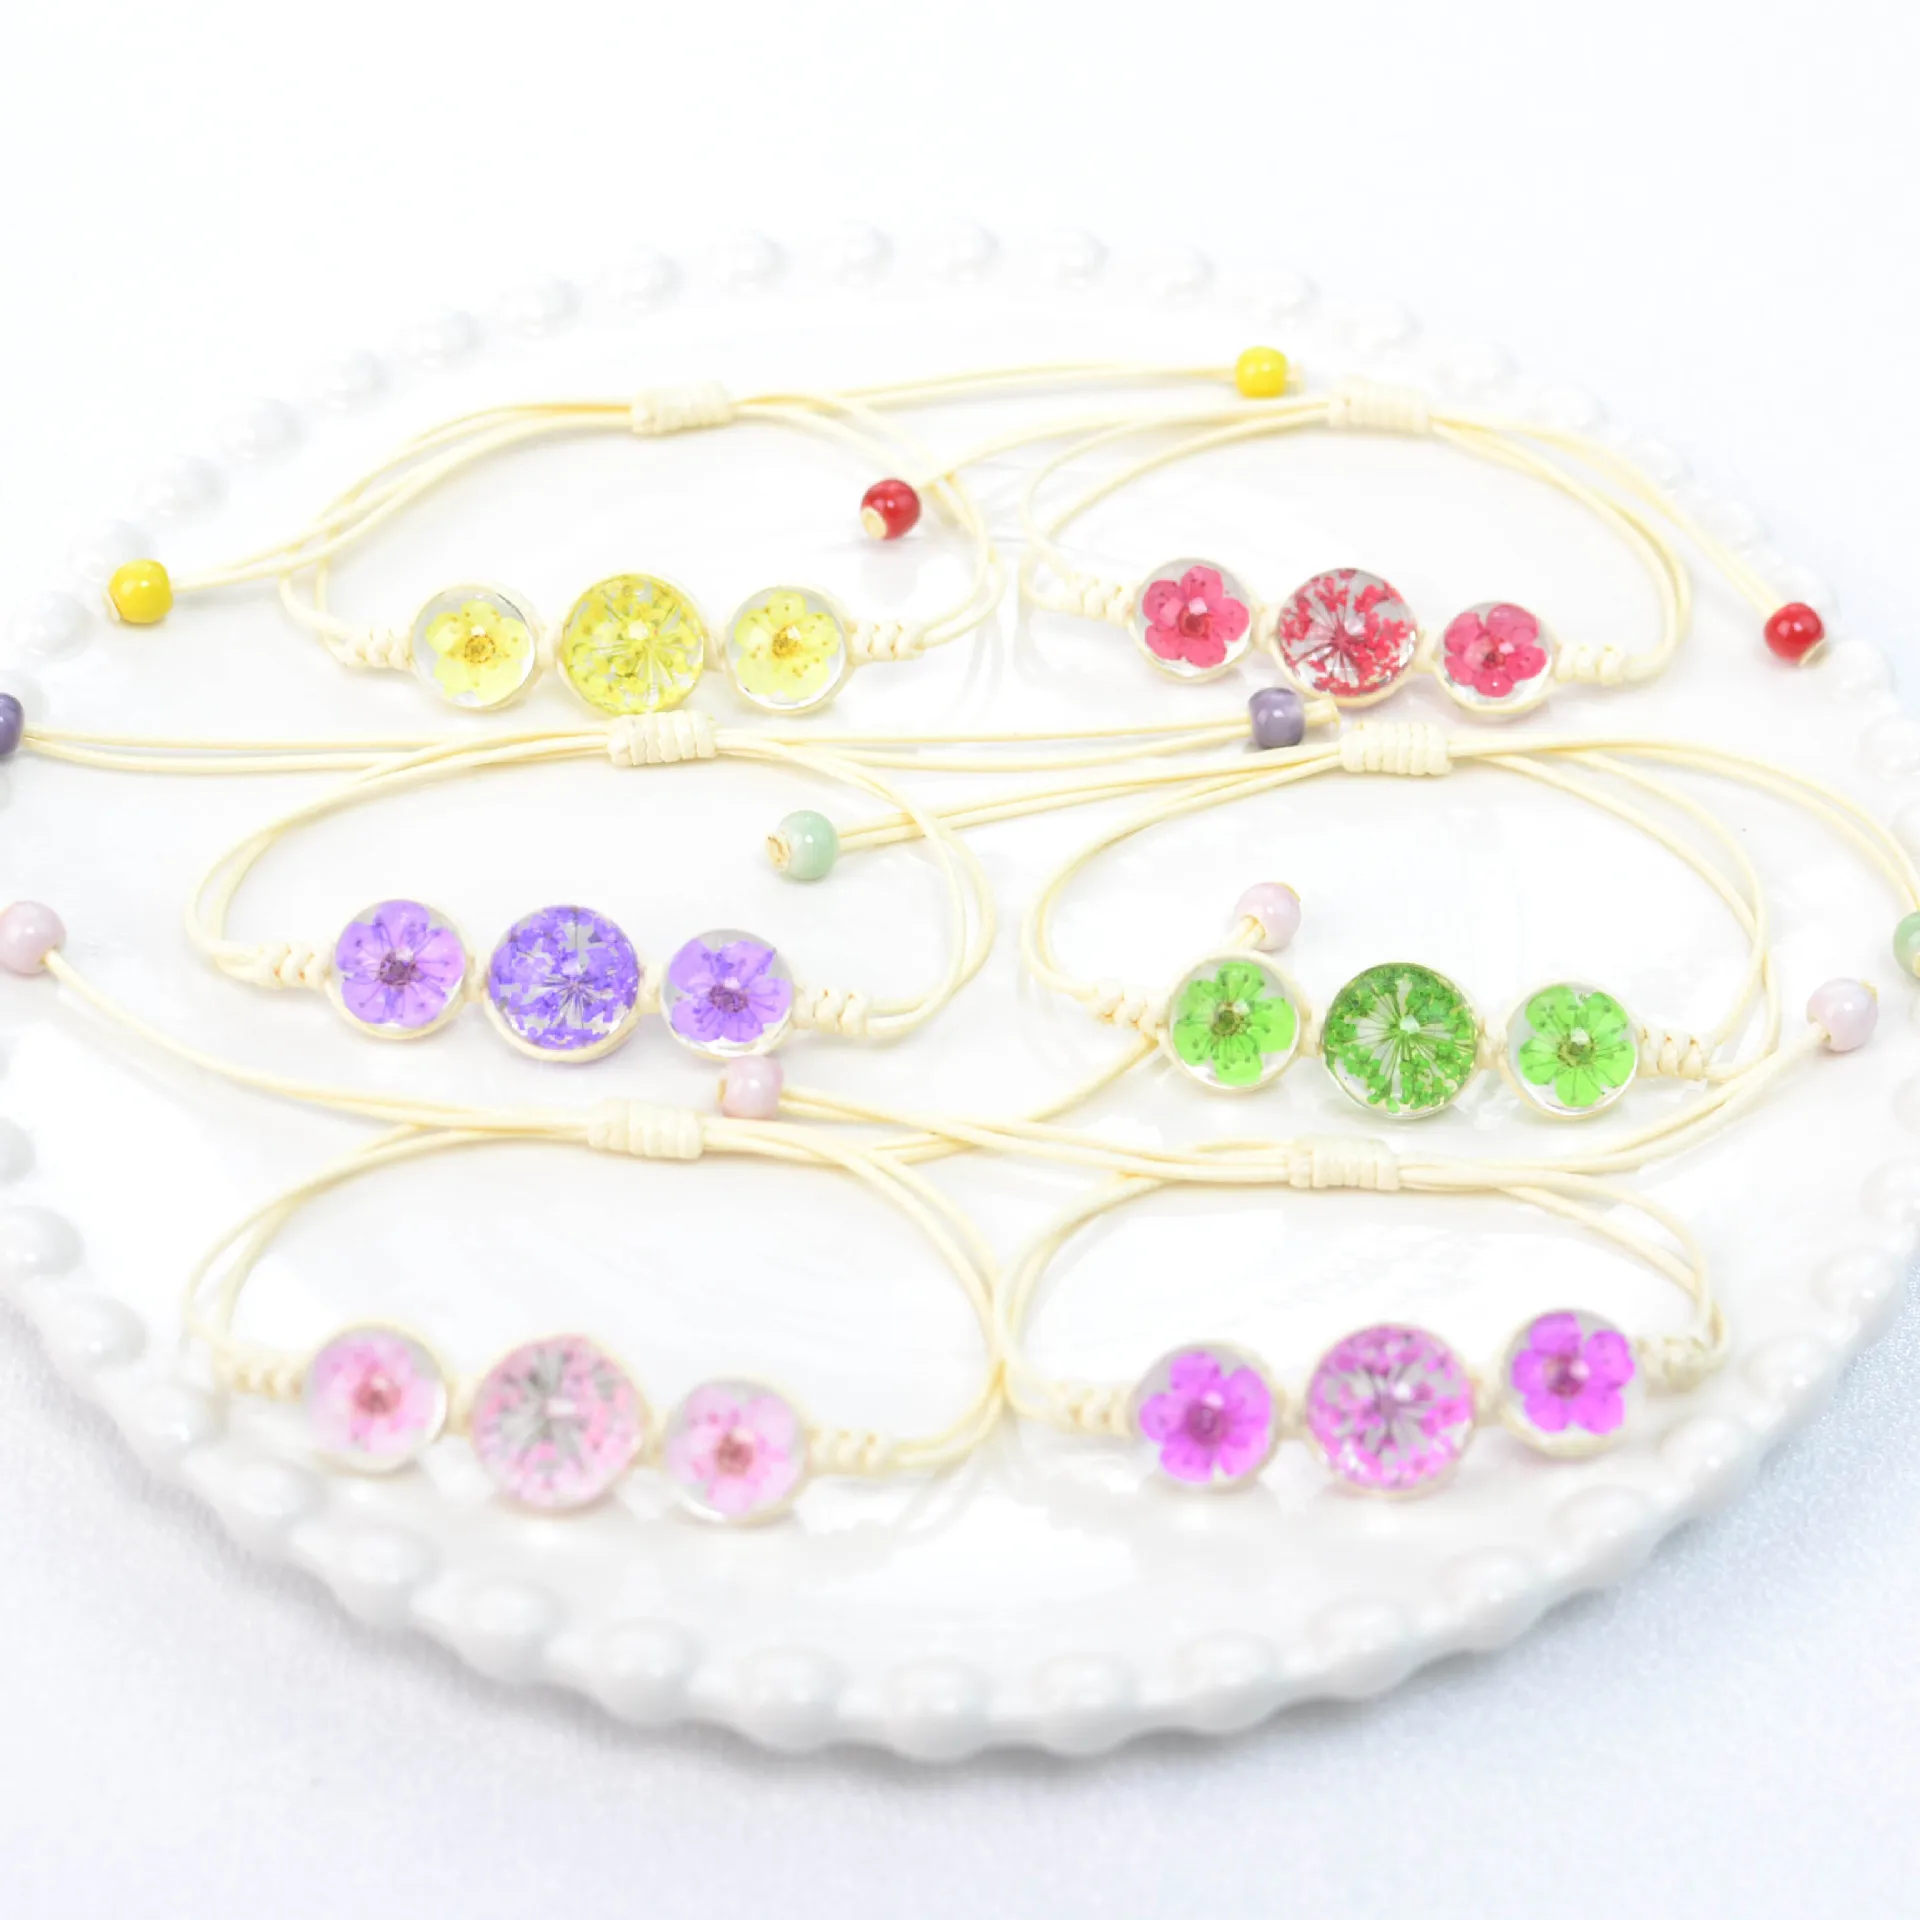 

2023 Dried Flower Botanical Specimen Bracelet For Women Girls Glass Ball Dandelion Bracelets Gift For Friends Jewelry Bangles